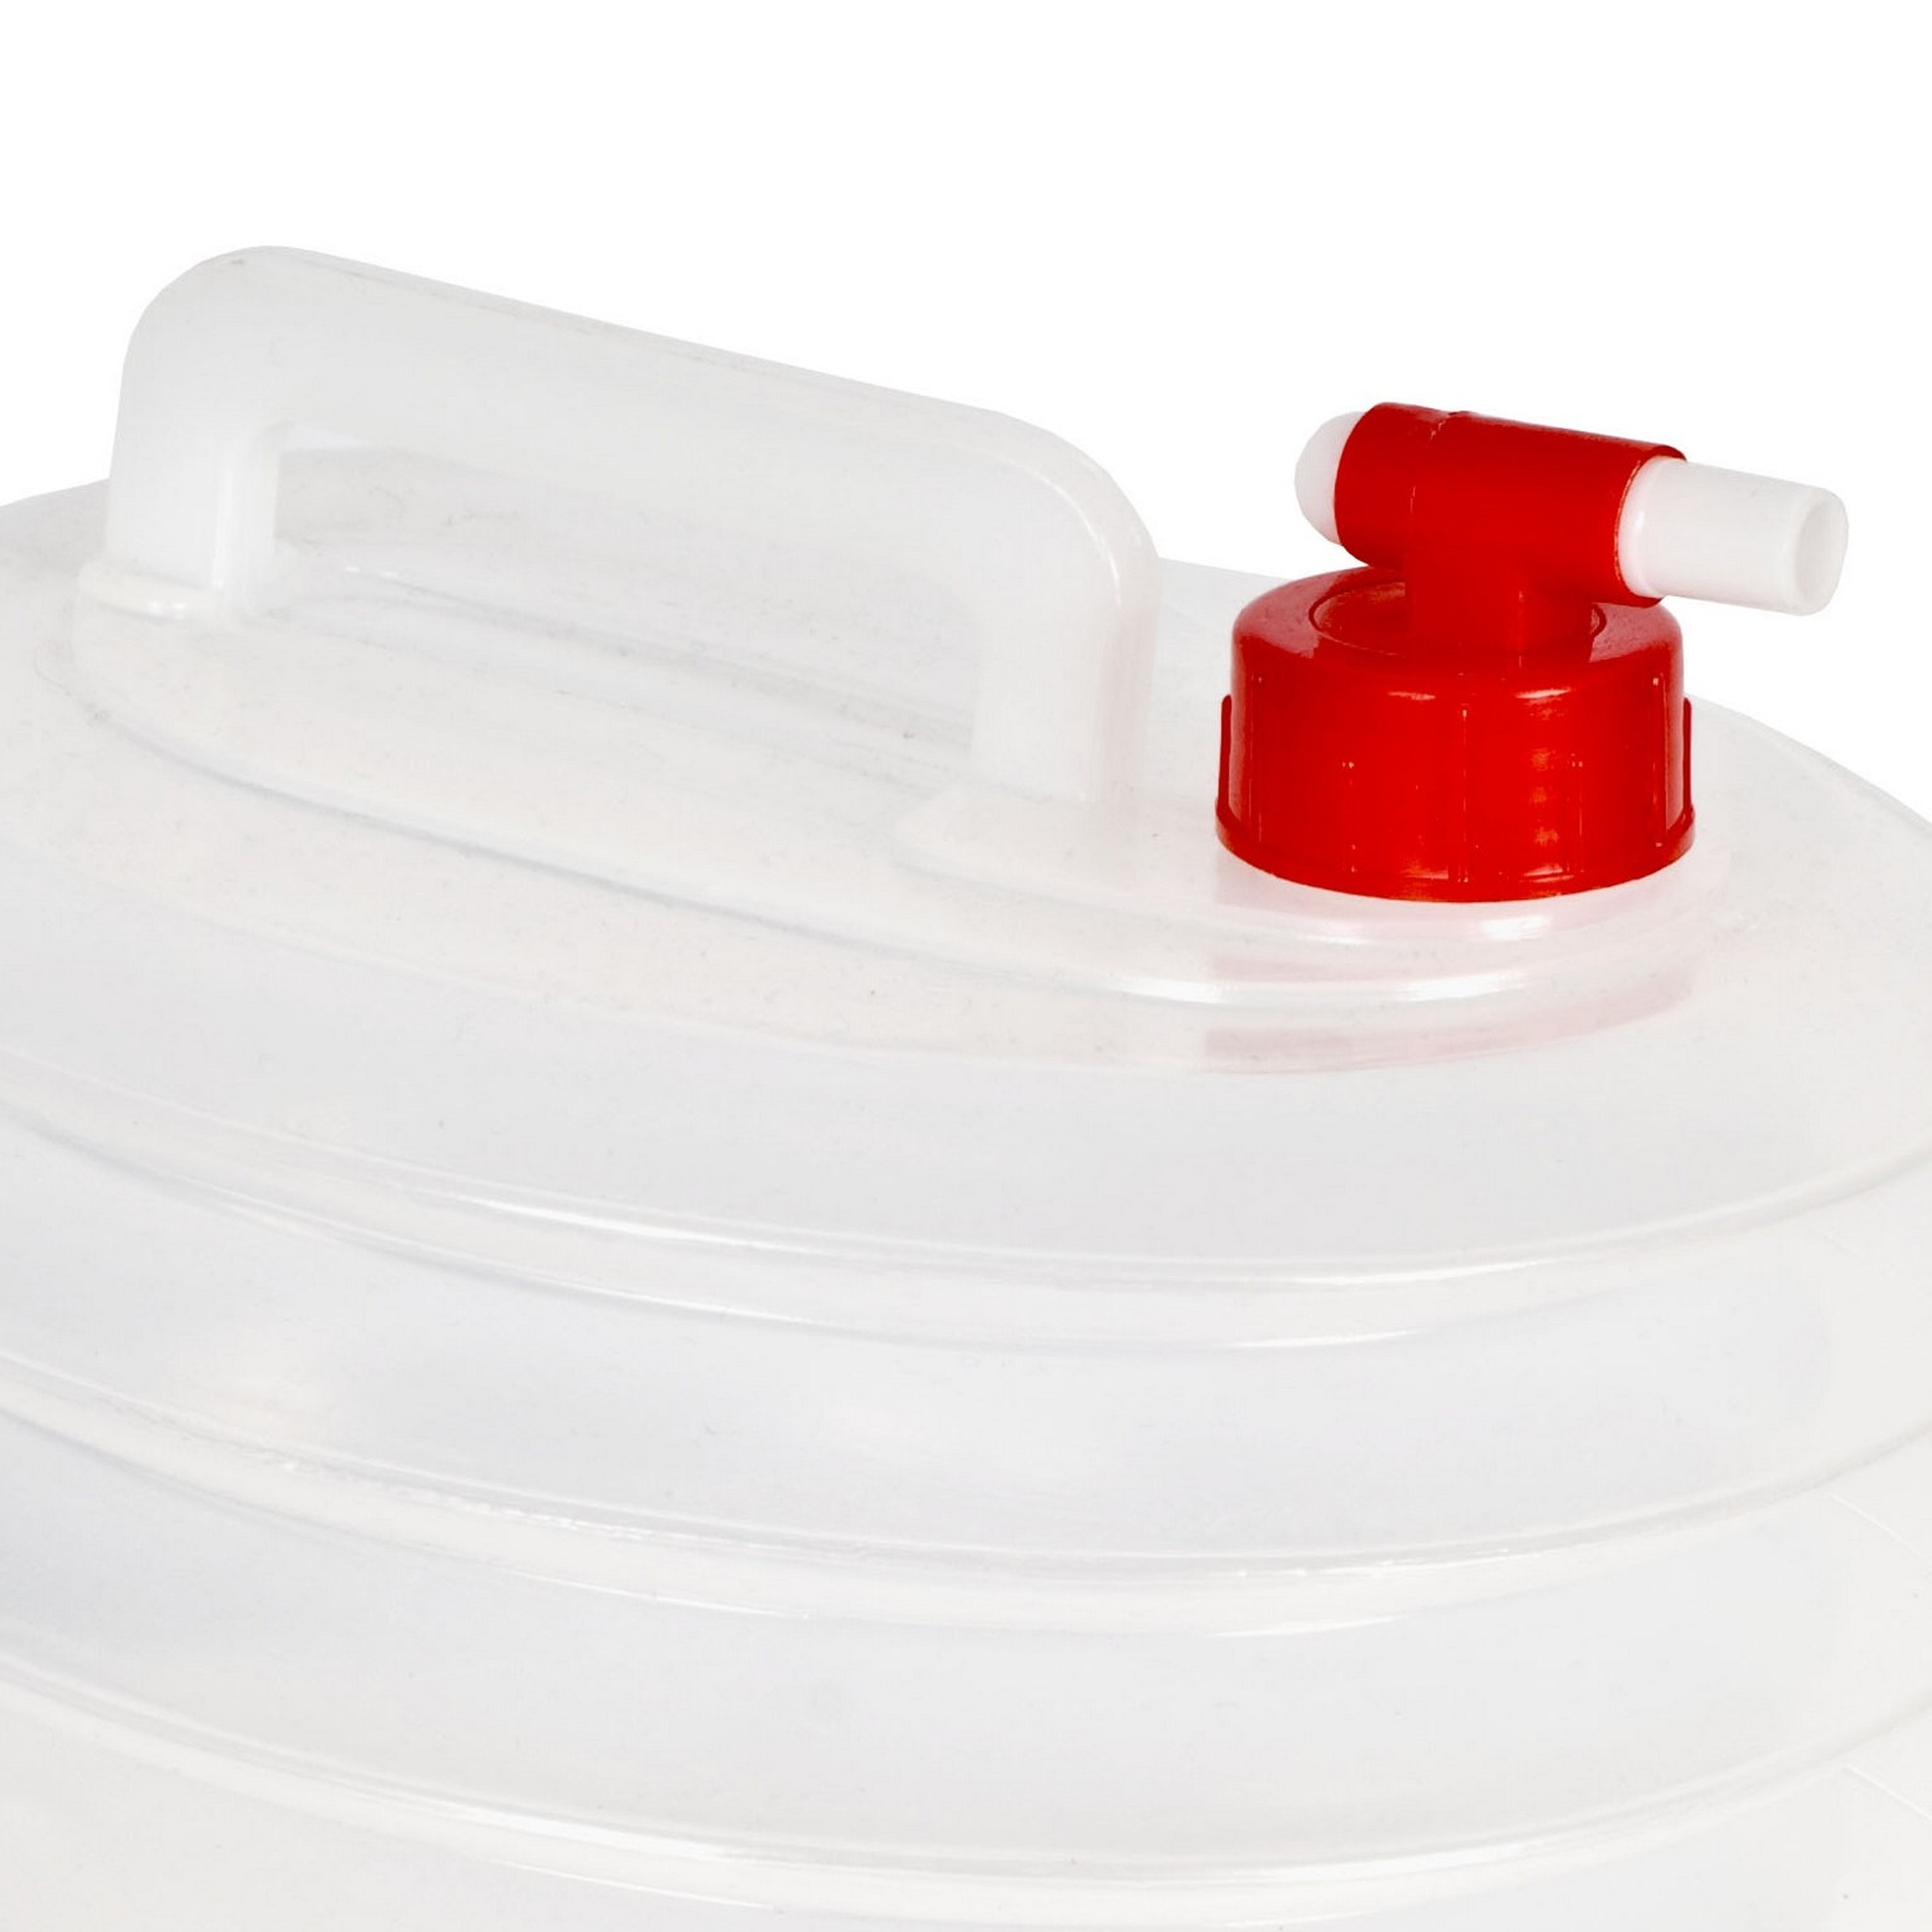 Botella / Recipiente En Acordeón Para Transportar Agua Trespass Squeezebox (6 Litros)